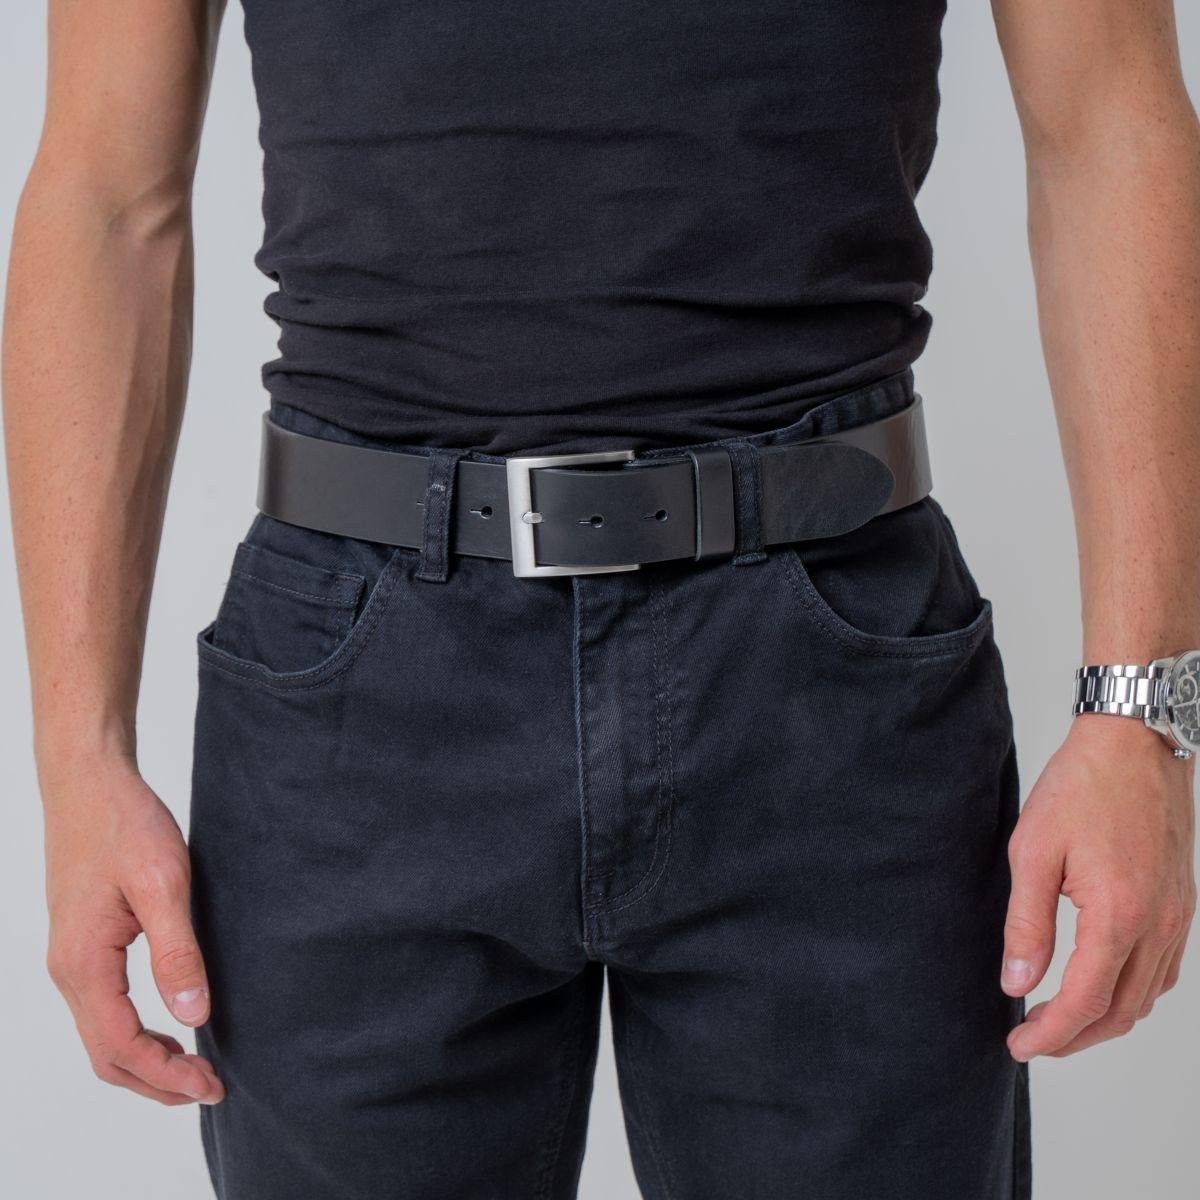 cm Leder-Gürtel Jeans-Gürtel Hochwertiger Vollrindleder Silber - Ledergürtel 4 für BELTINGER aus Marine, He